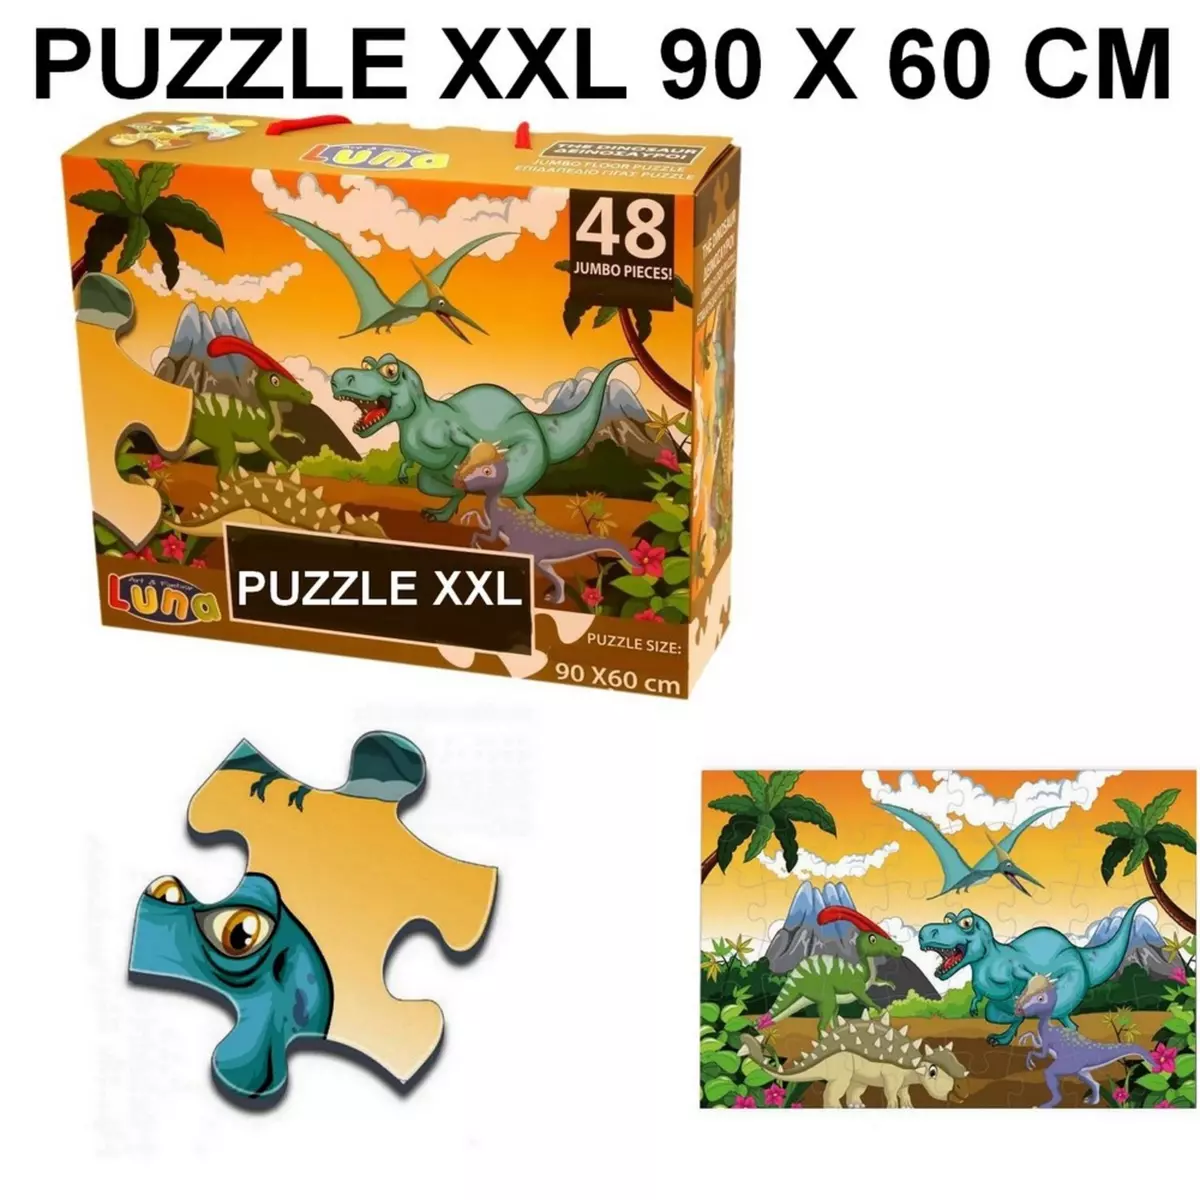  Puzzle geant 48 pieces Dinosaure piece XL 60 x 90 cm